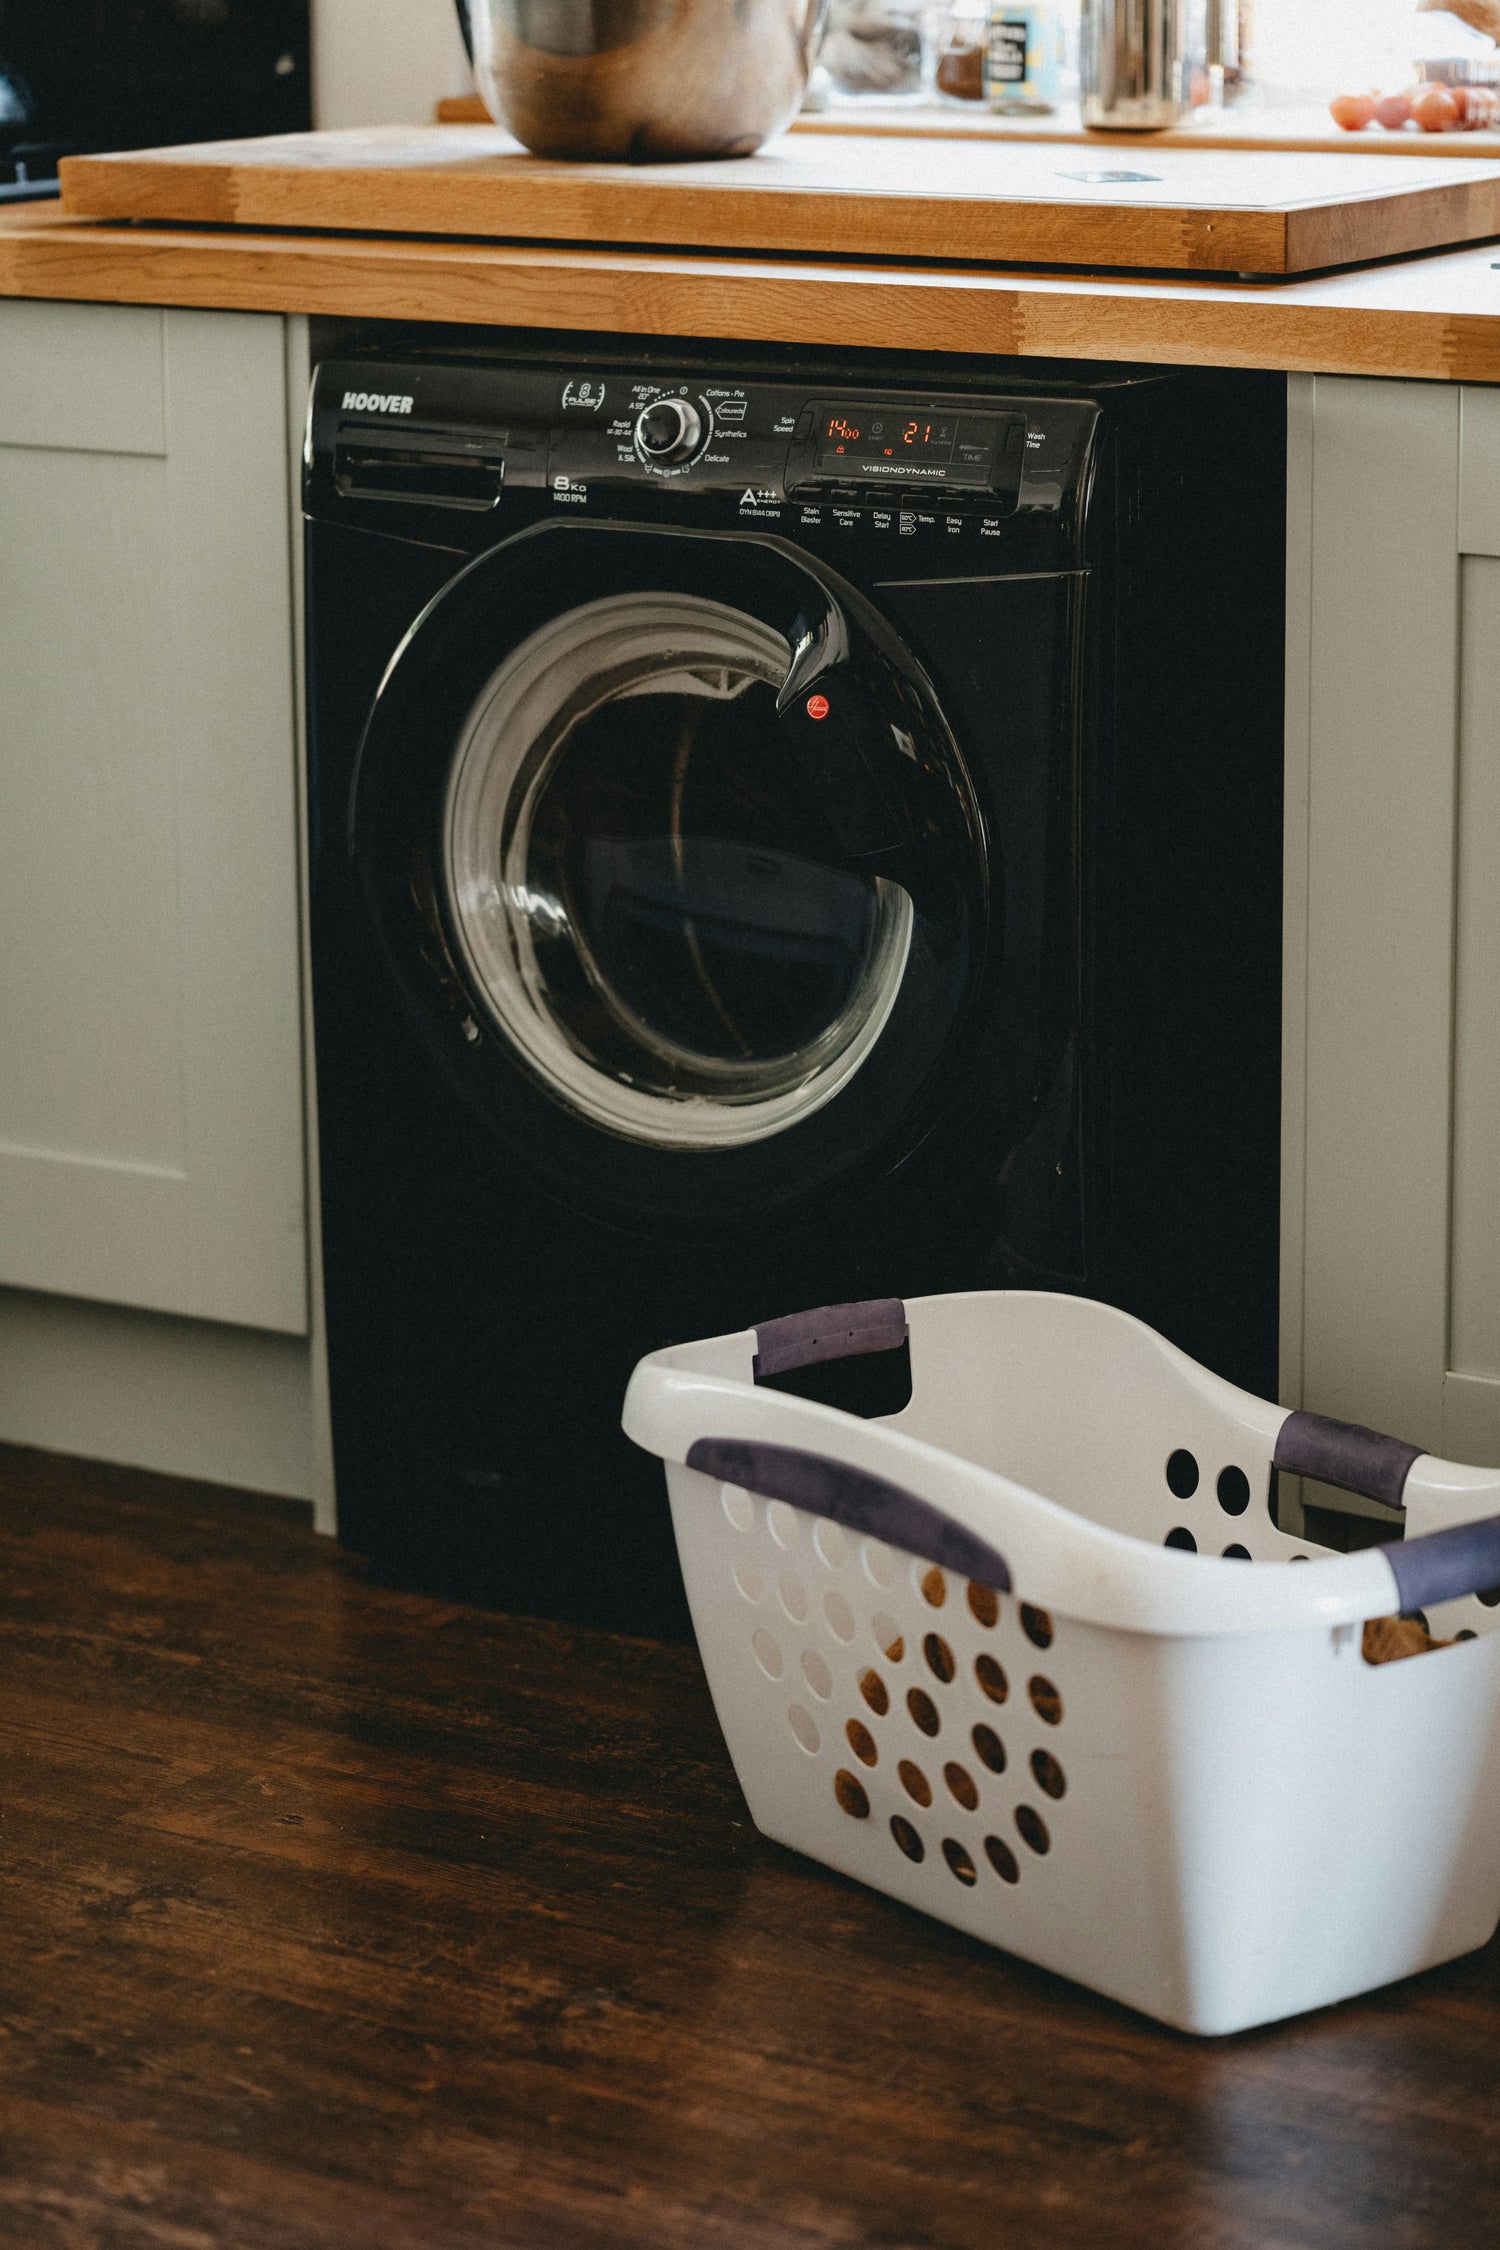 white laundry basket sitting on dark hardwood floors next to black washing machine